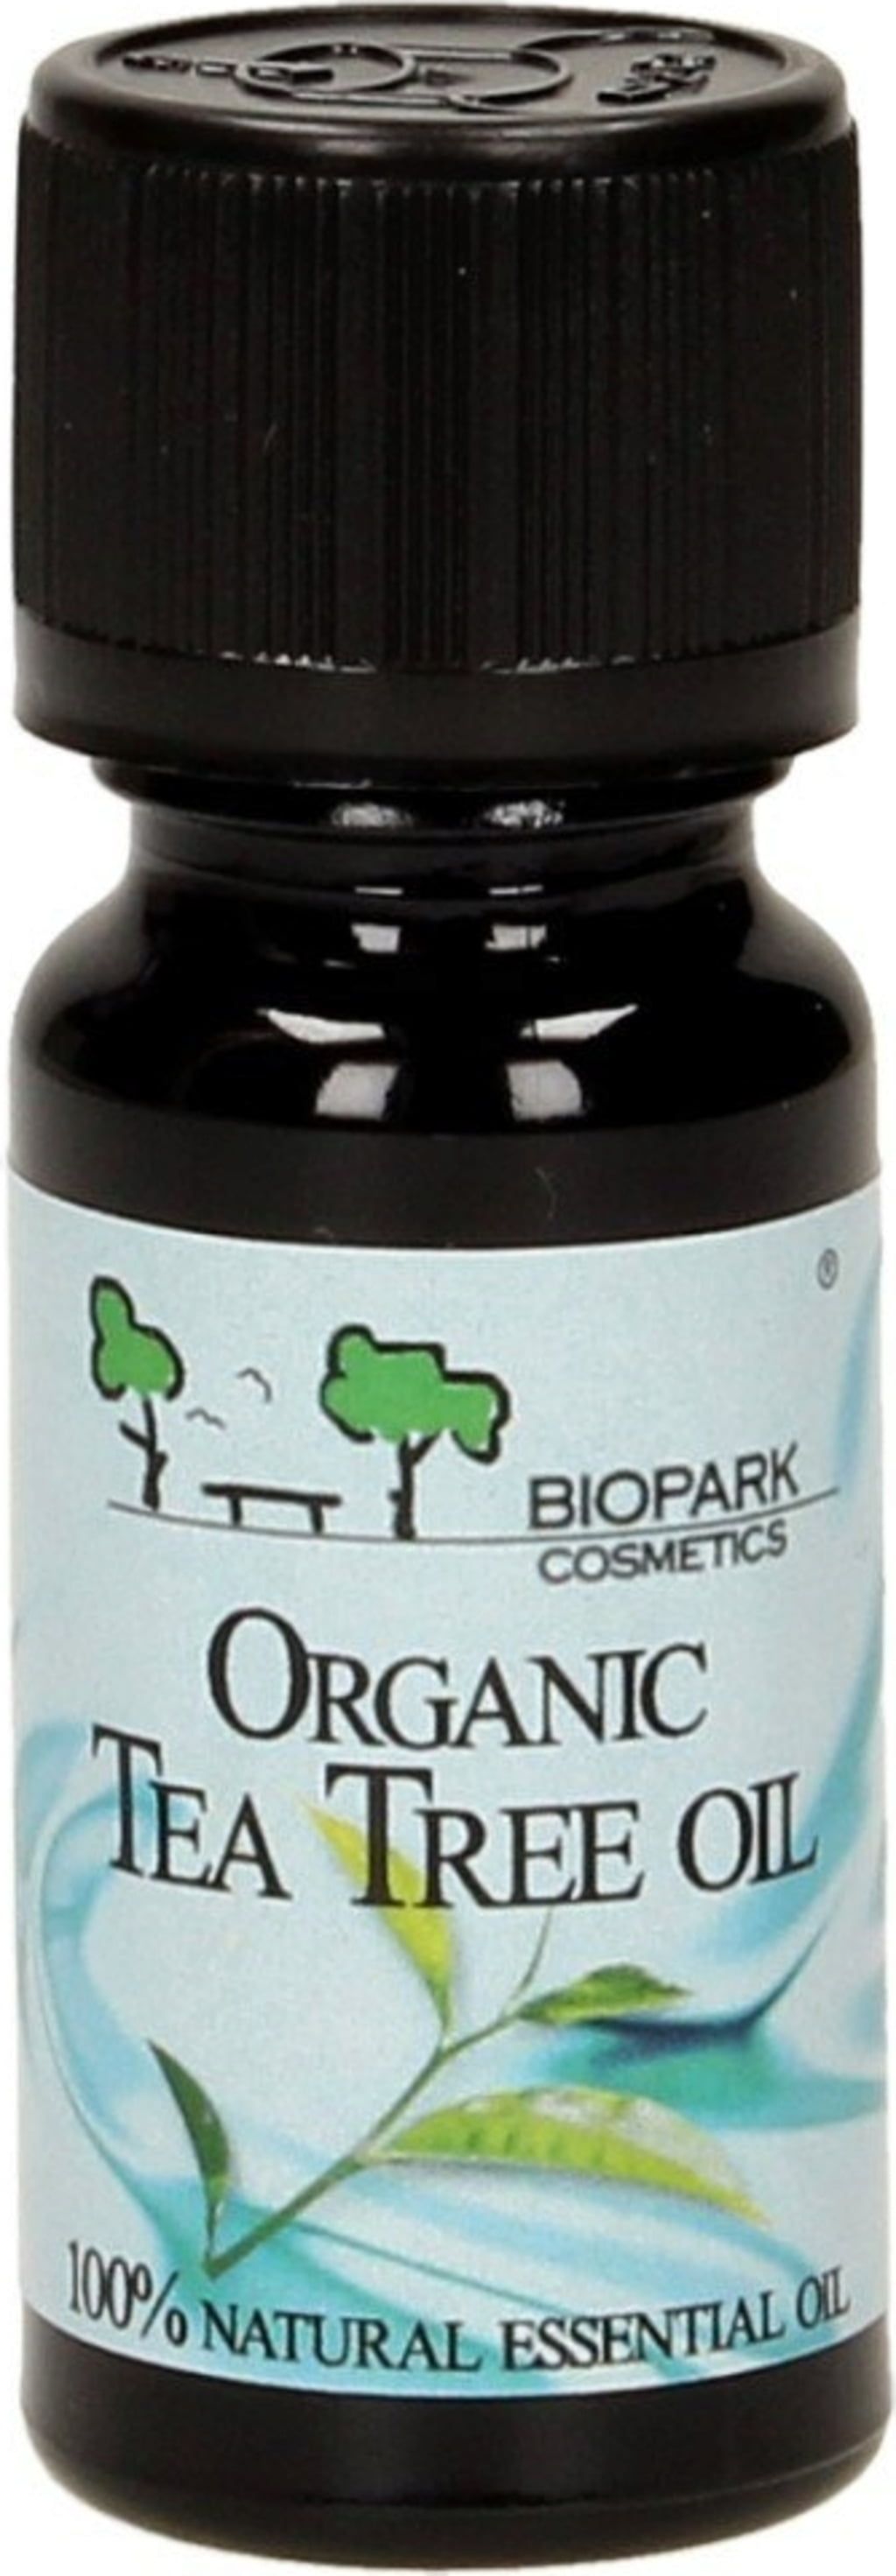 Biopark Cosmetics Aceite Esencial de Árbol de Té Orgánico - 10 ml